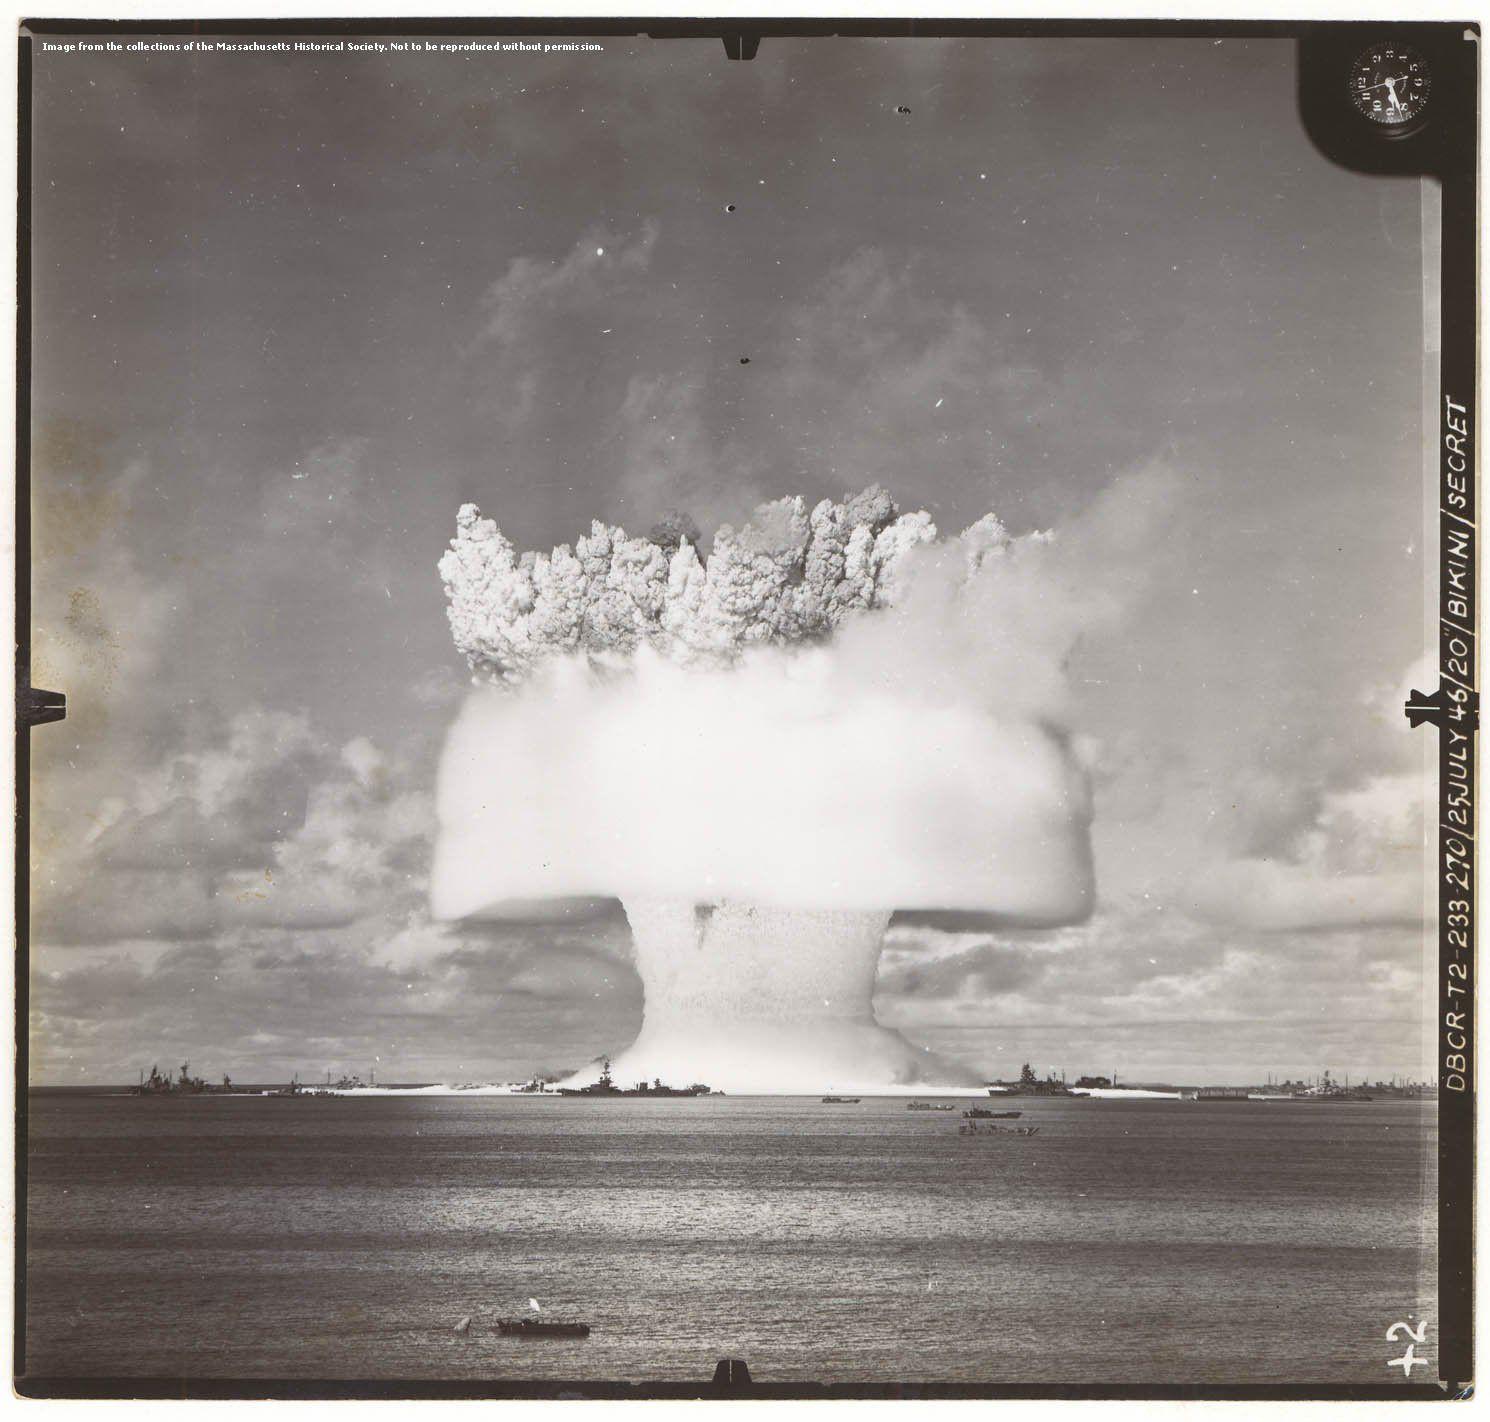 The S. reccomend Bikini atoll bomb testing